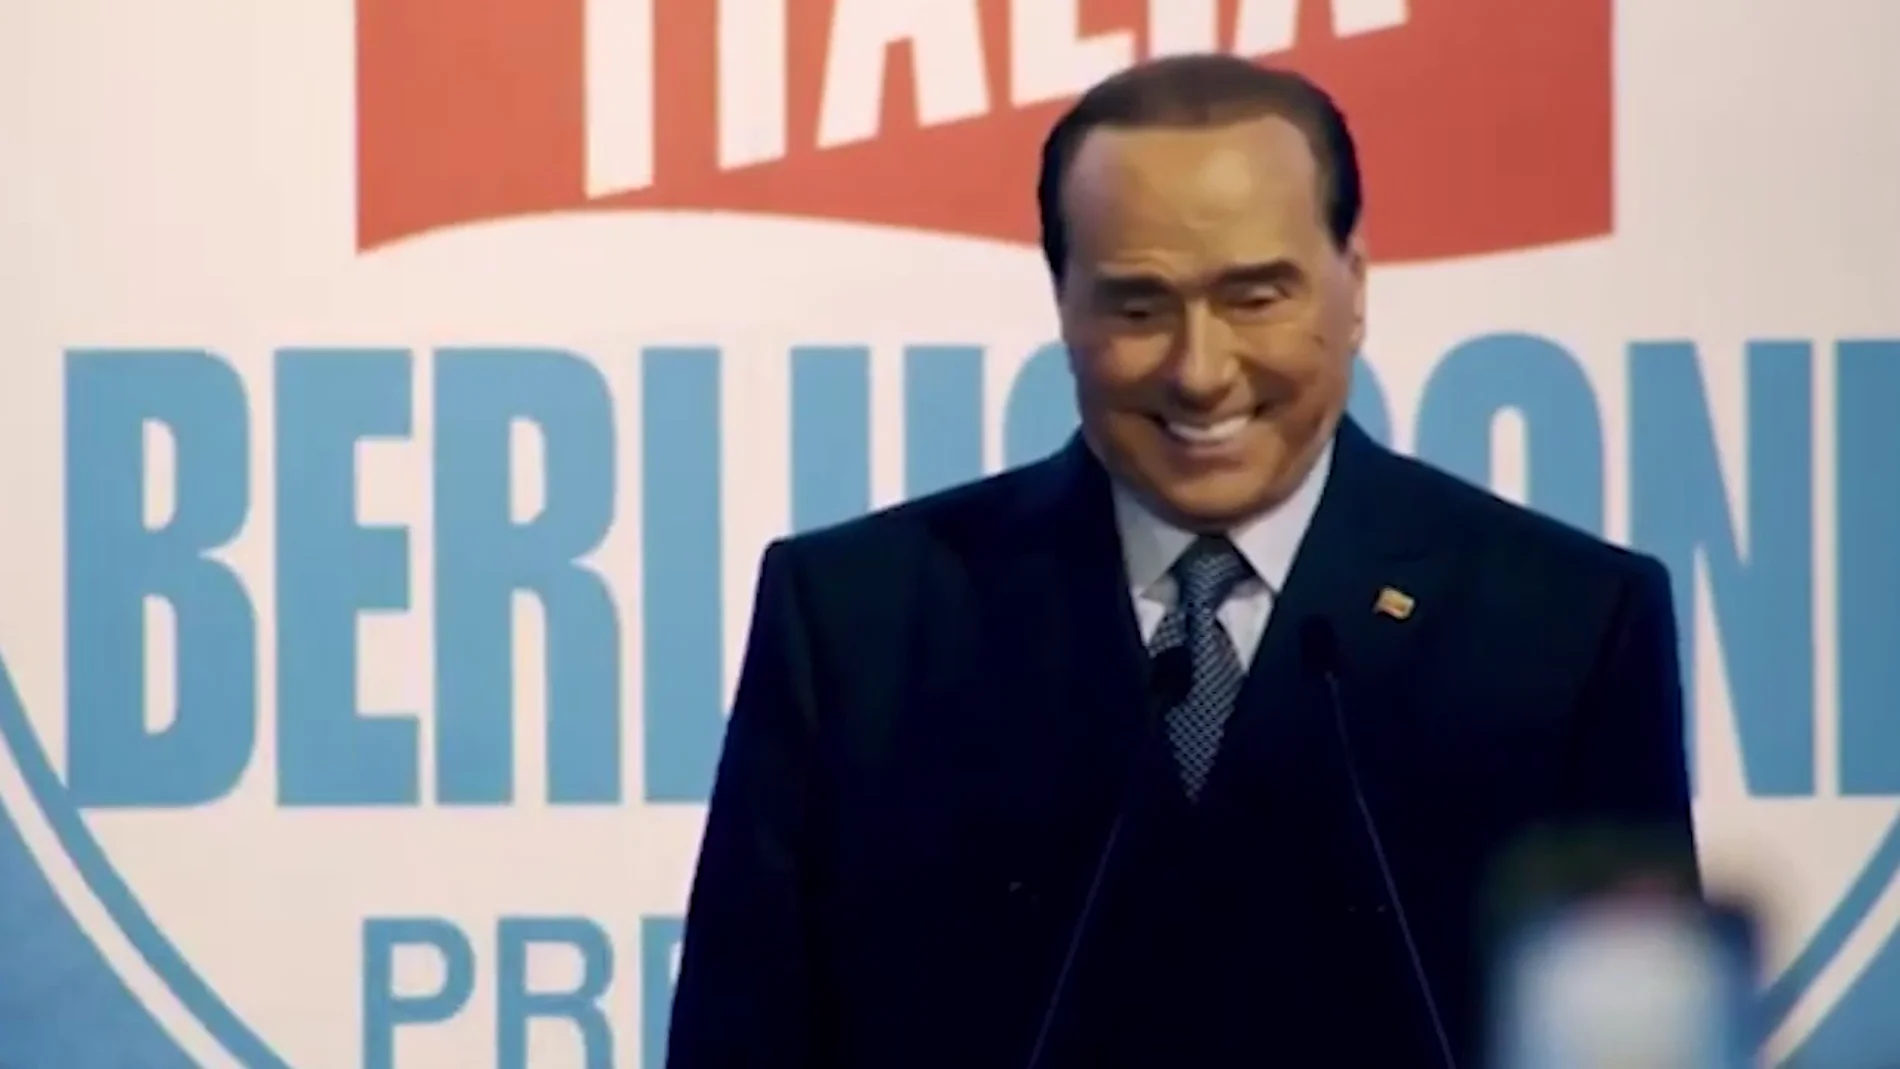 Berlusconi, absuelto de los cargos de corrupción de testigos